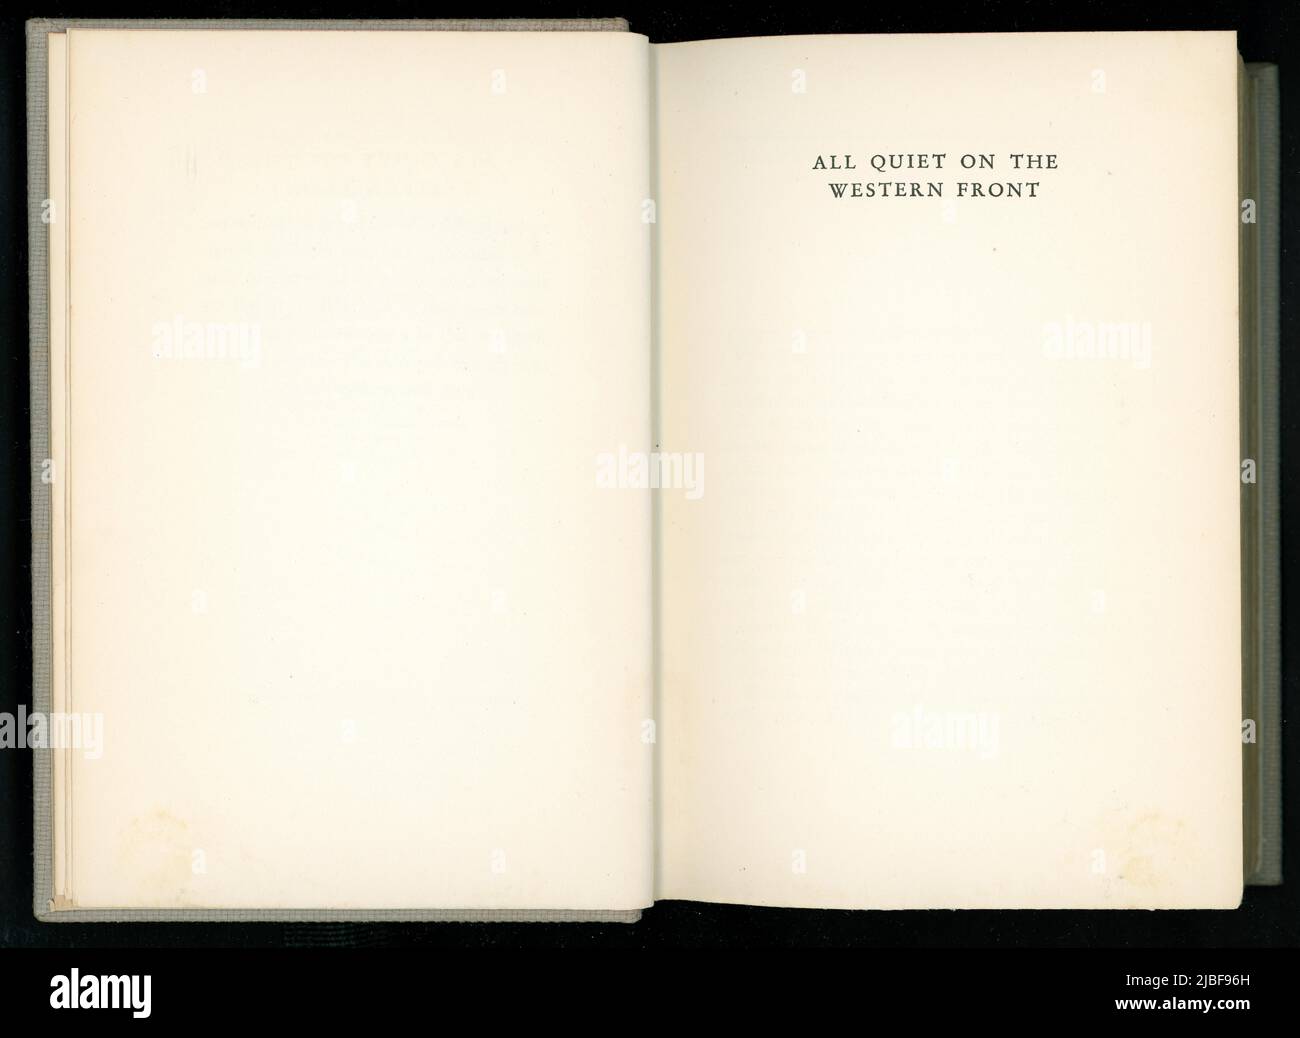 Page originale du titre du livre intérieur de tous Quiet sur le front occidental par Eric Maria Remarque, cette édition américaine a été publiée en 1929 Banque D'Images